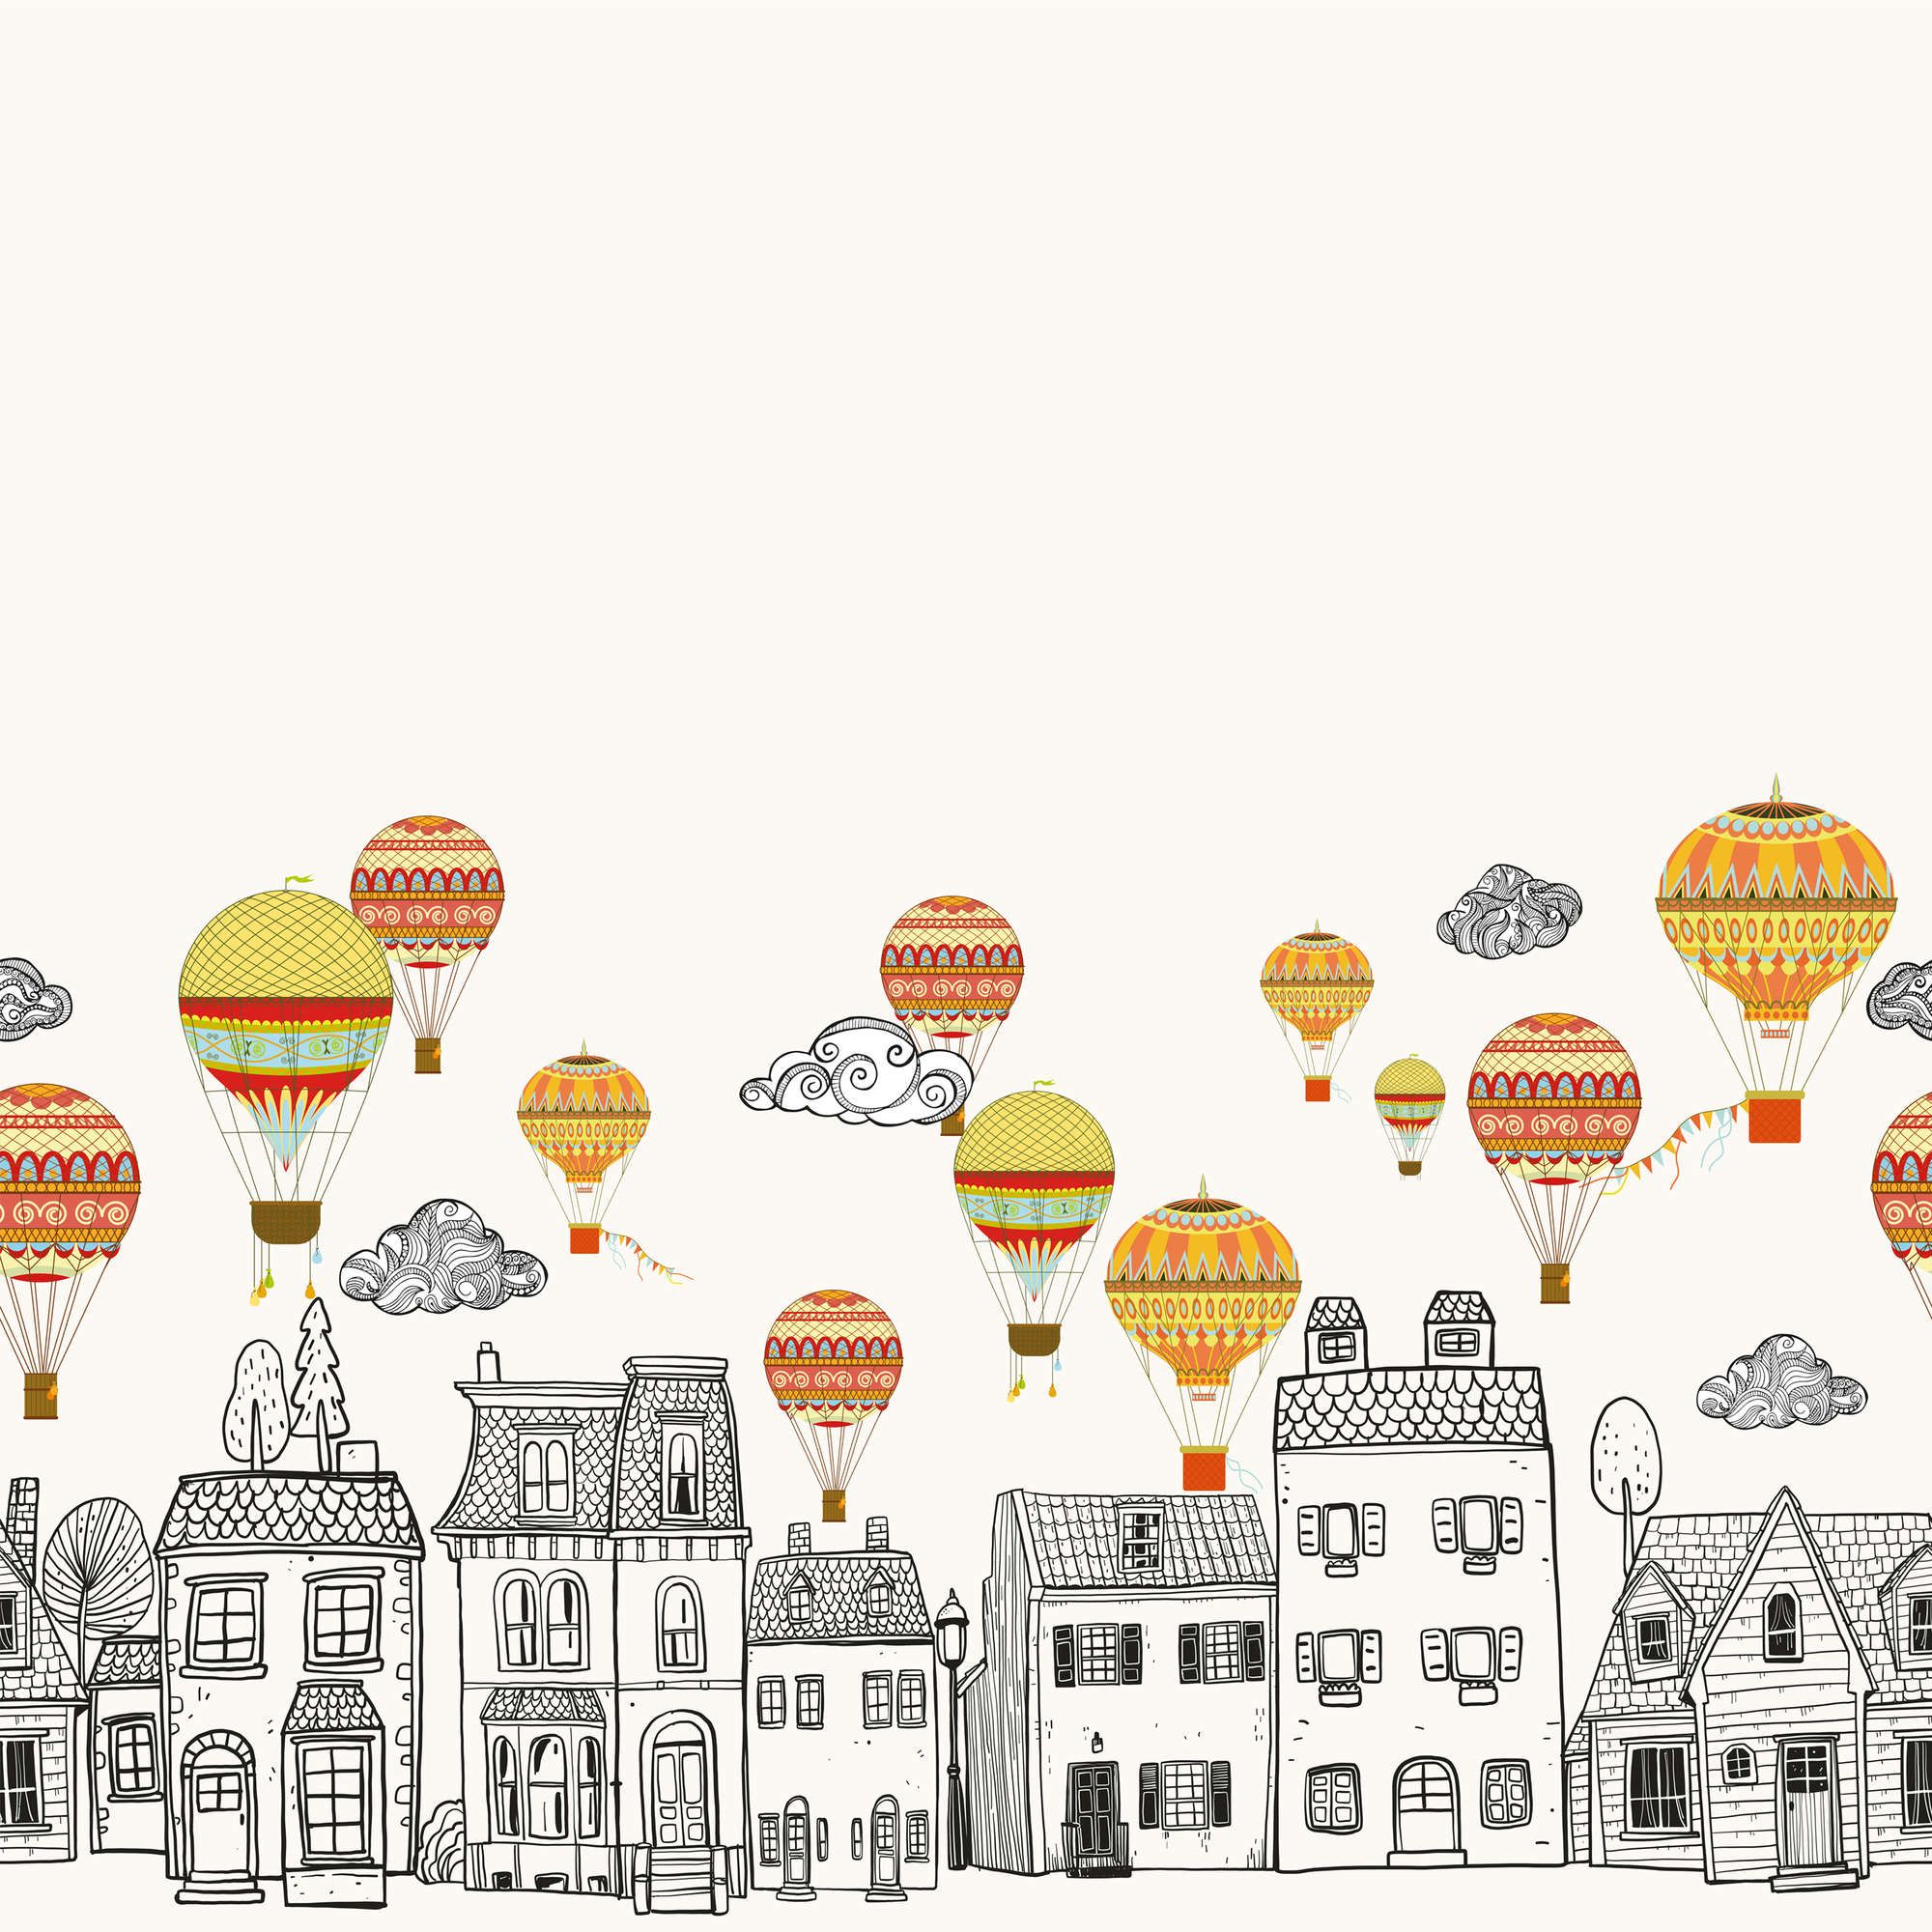             Kleine stad met heteluchtballonnen behang - structuurvlies
        